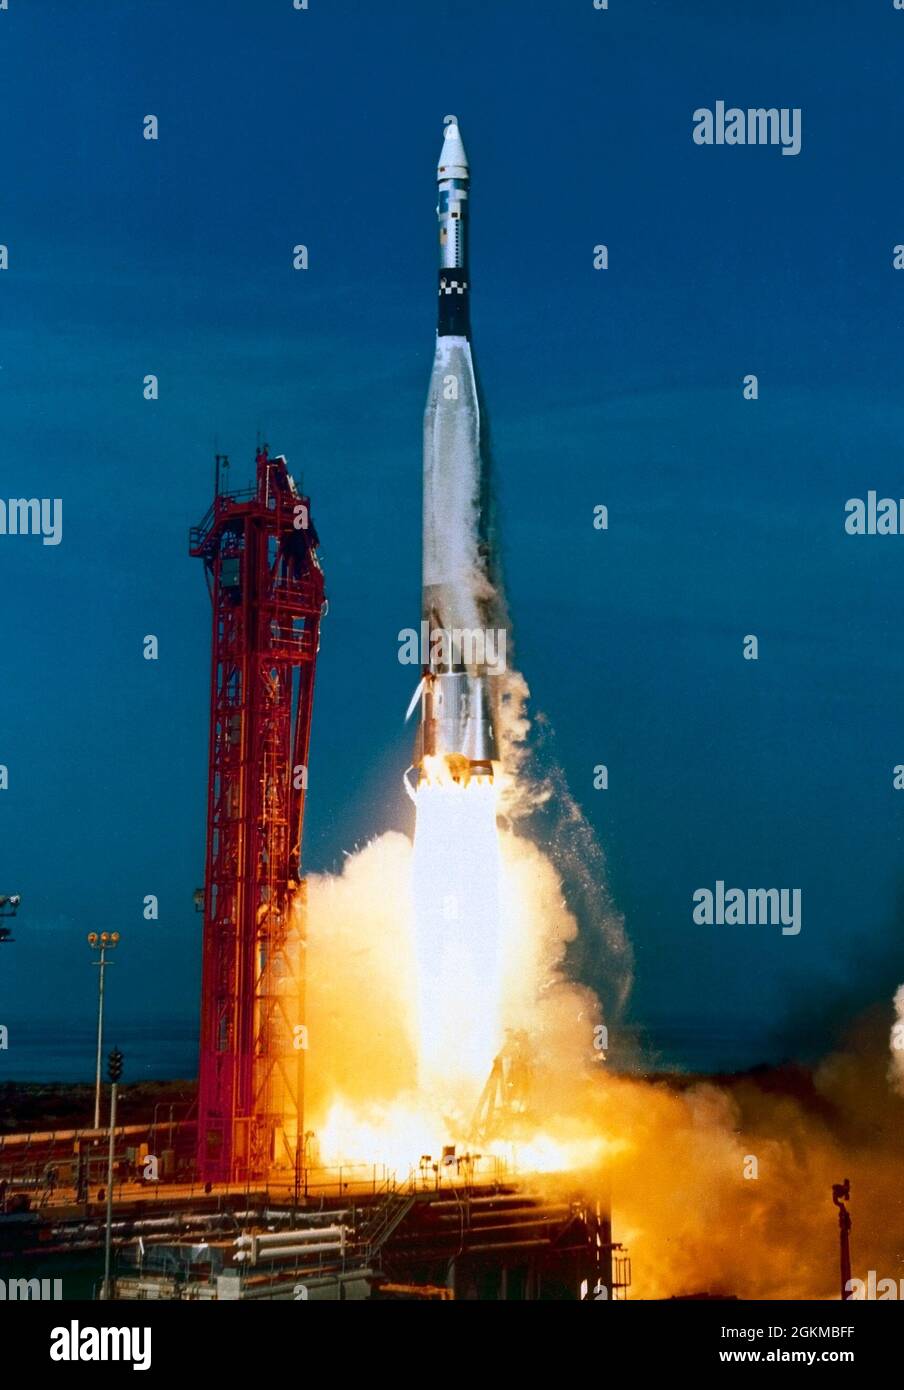 Lanzado sobre un booster Atlas, el vehículo objetivo Agena (ATV) fue una nave espacial utilizada por la NASA para desarrollar y practicar técnicas de encuentro y acoplamiento en el espacio orbital en preparación para las misiones lunares del programa Apollo. Este lanzamiento en particular precedió al Gemini 12, que se lanzó a bordo de un vehículo de lanzamiento Titán una hora y media más tarde. El objetivo era que Agena y Gemini se encontraran en el espacio y practicaran procedimientos de atraque. Un paso intermedio entre el Proyecto Mercurio y el Programa Apolo, los principales objetivos del Programa Gemini fueron someter a dos hombres y equipo de apoyo a mucho tiempo Foto de stock